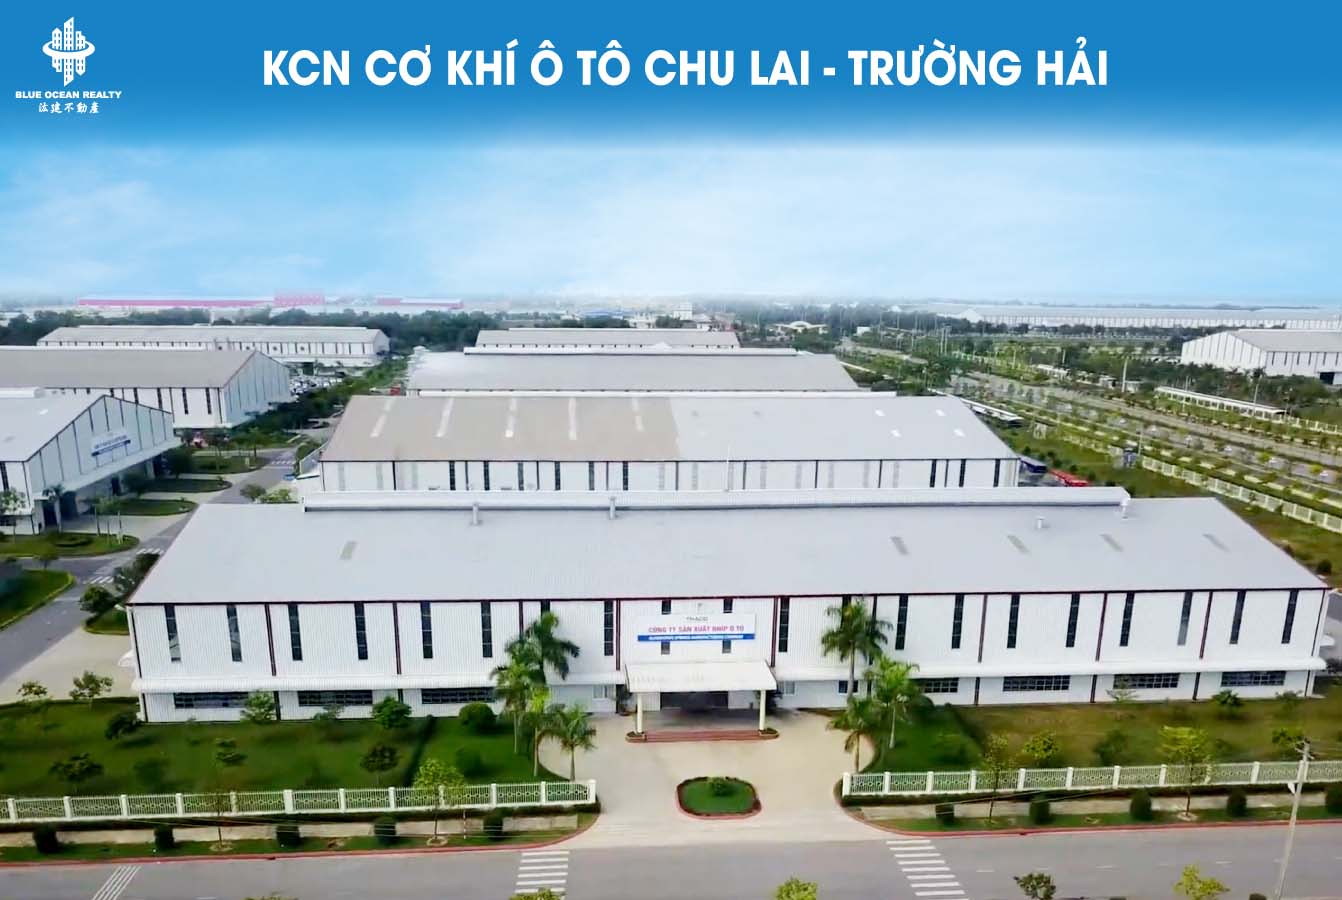 KCN cơ khí ô tô Chu Lai - Trường Hải